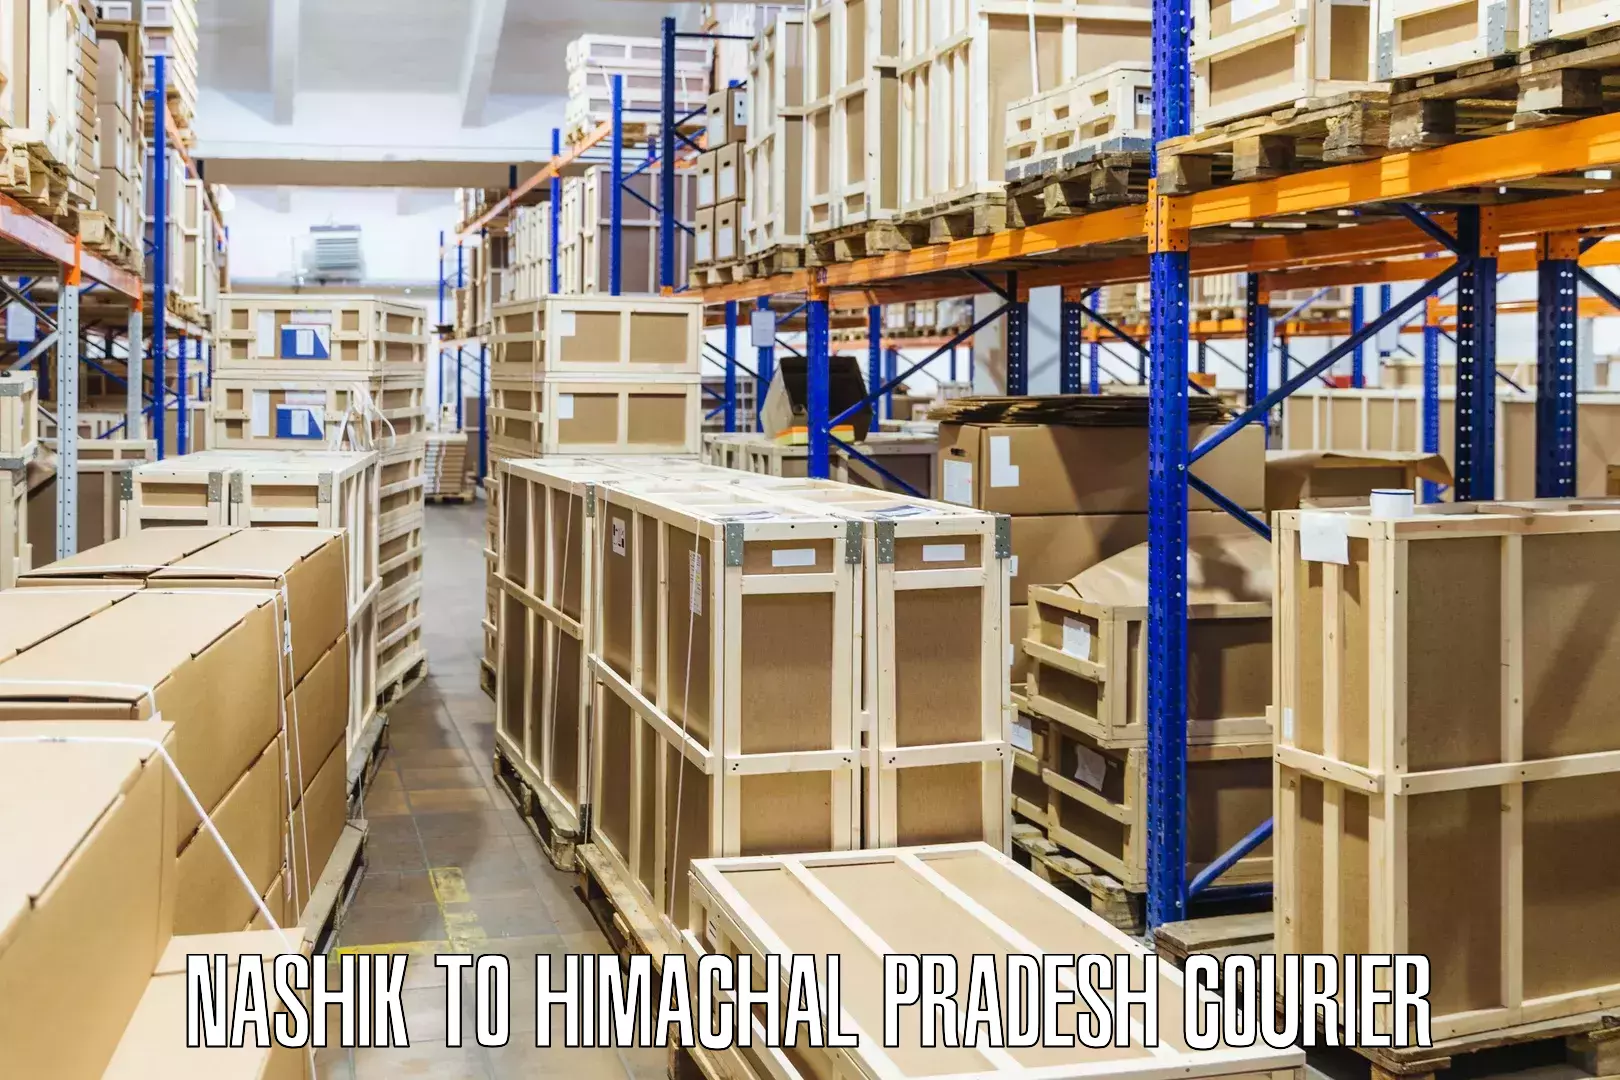 International courier rates in Nashik to Himachal Pradesh